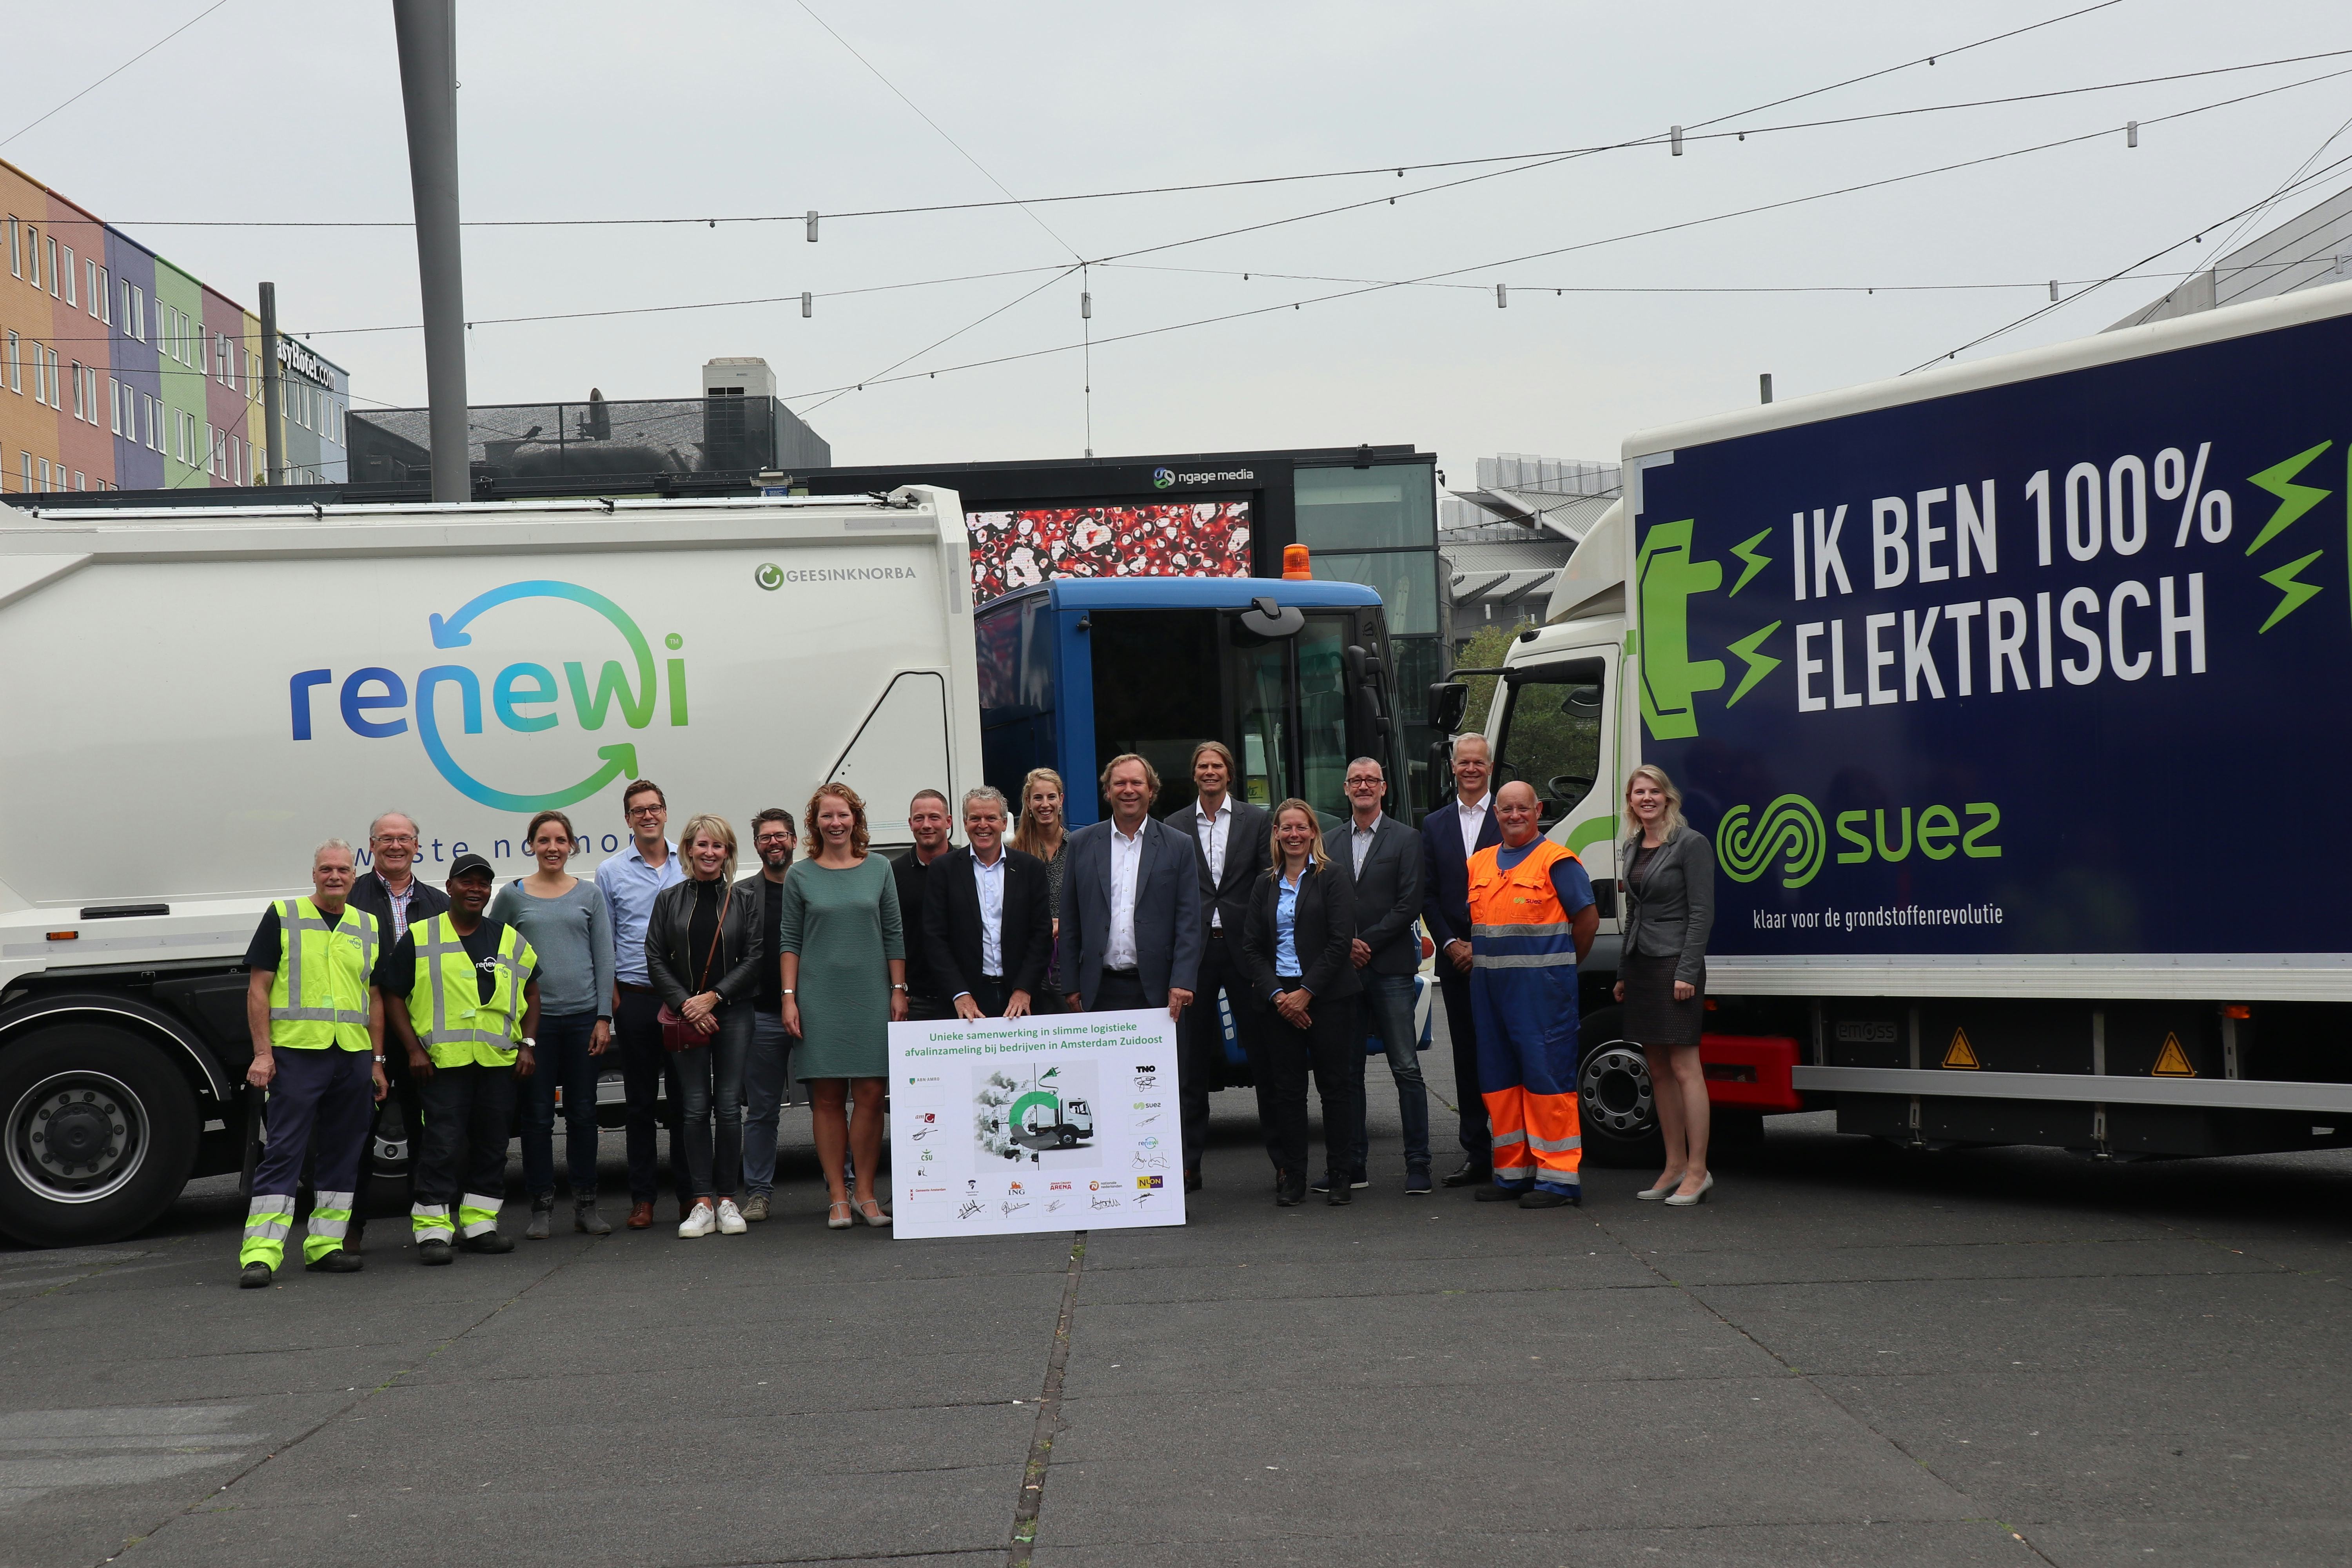 Proef elektrisch afval inzamelen in Amsterdam van start